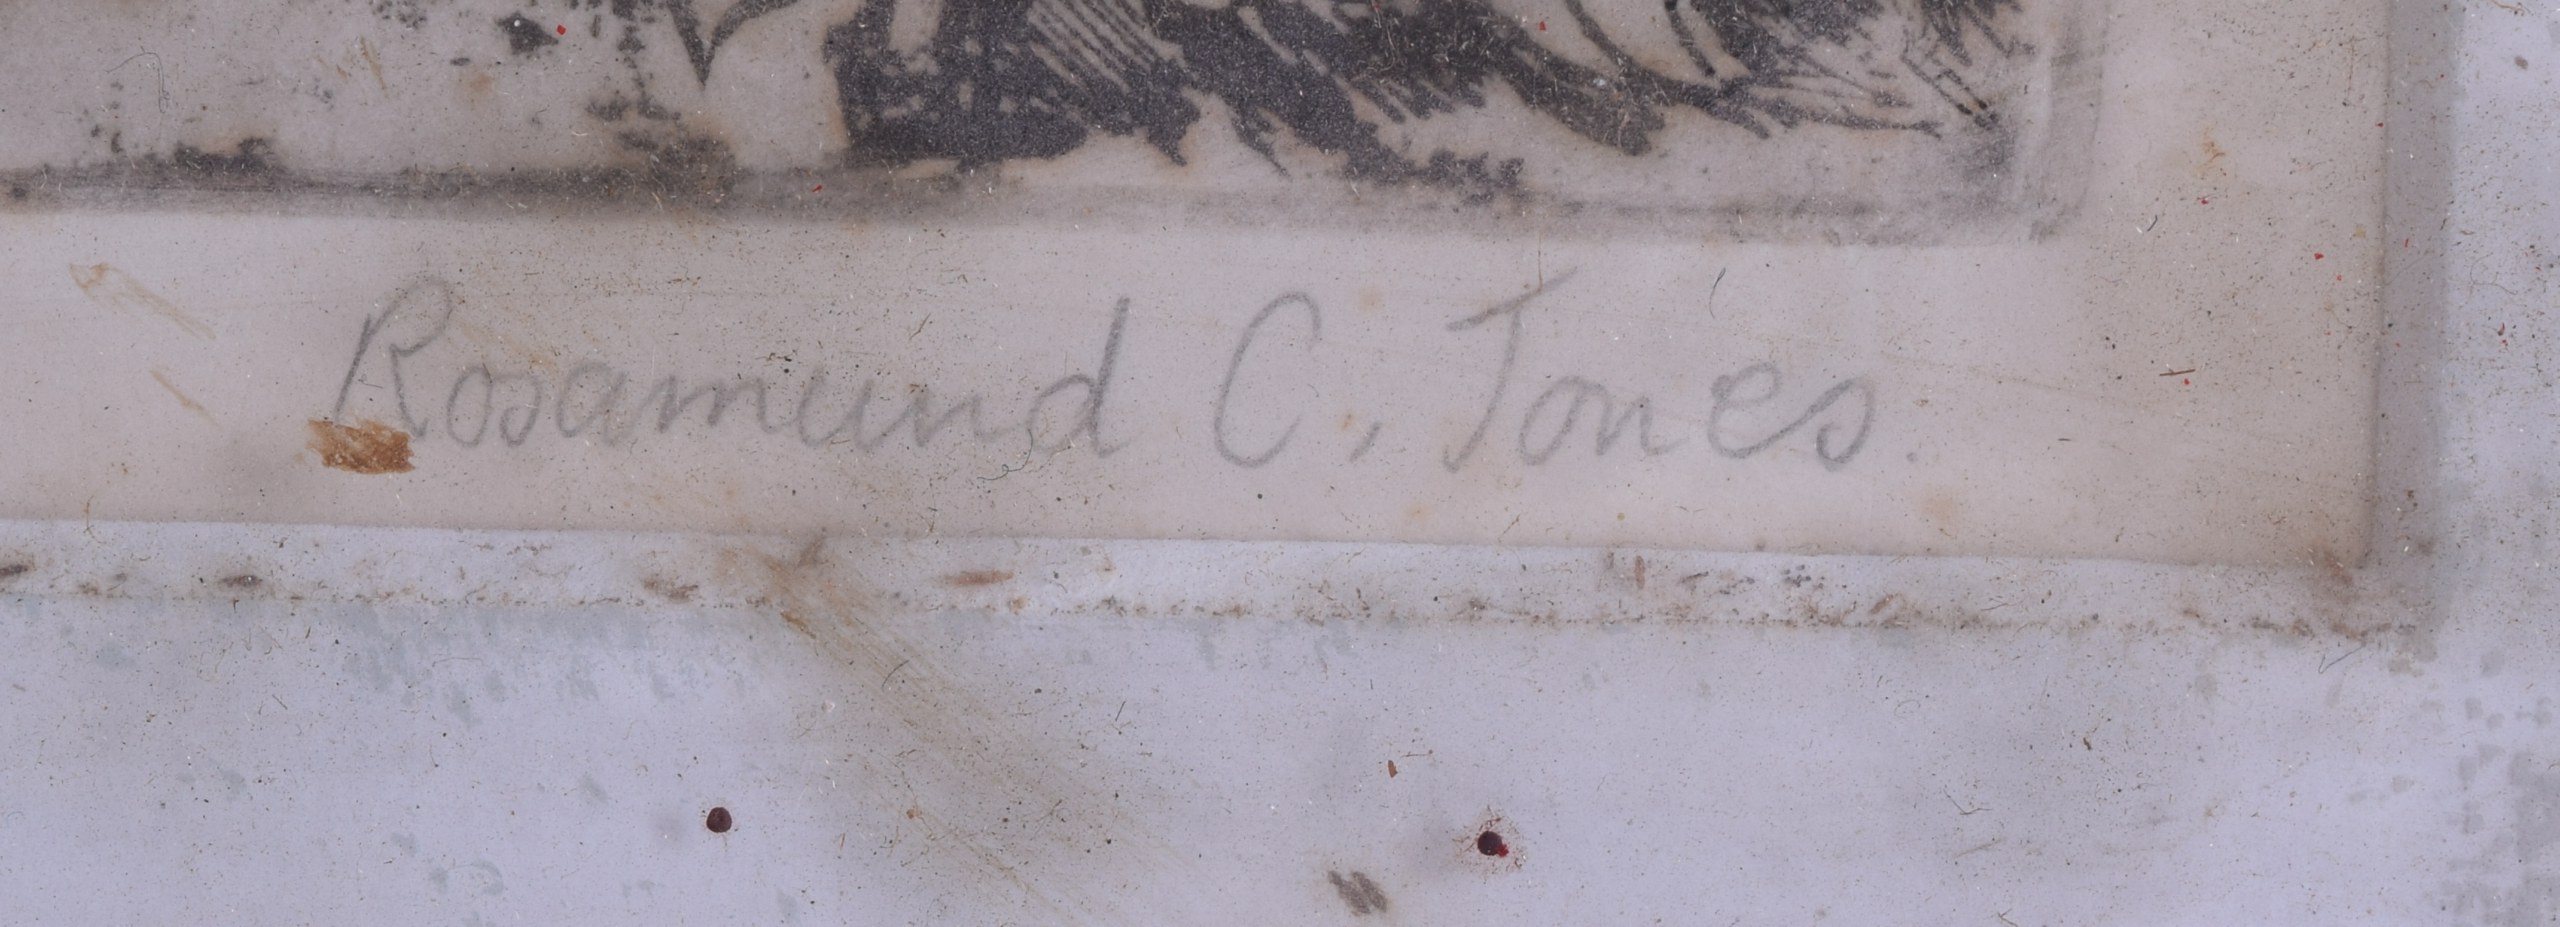 ROSMUND C JONES (British), Framed Engraving, "2nd image", "Bantams in Field". 24 cm x 33 cm. - Bild 2 aus 2